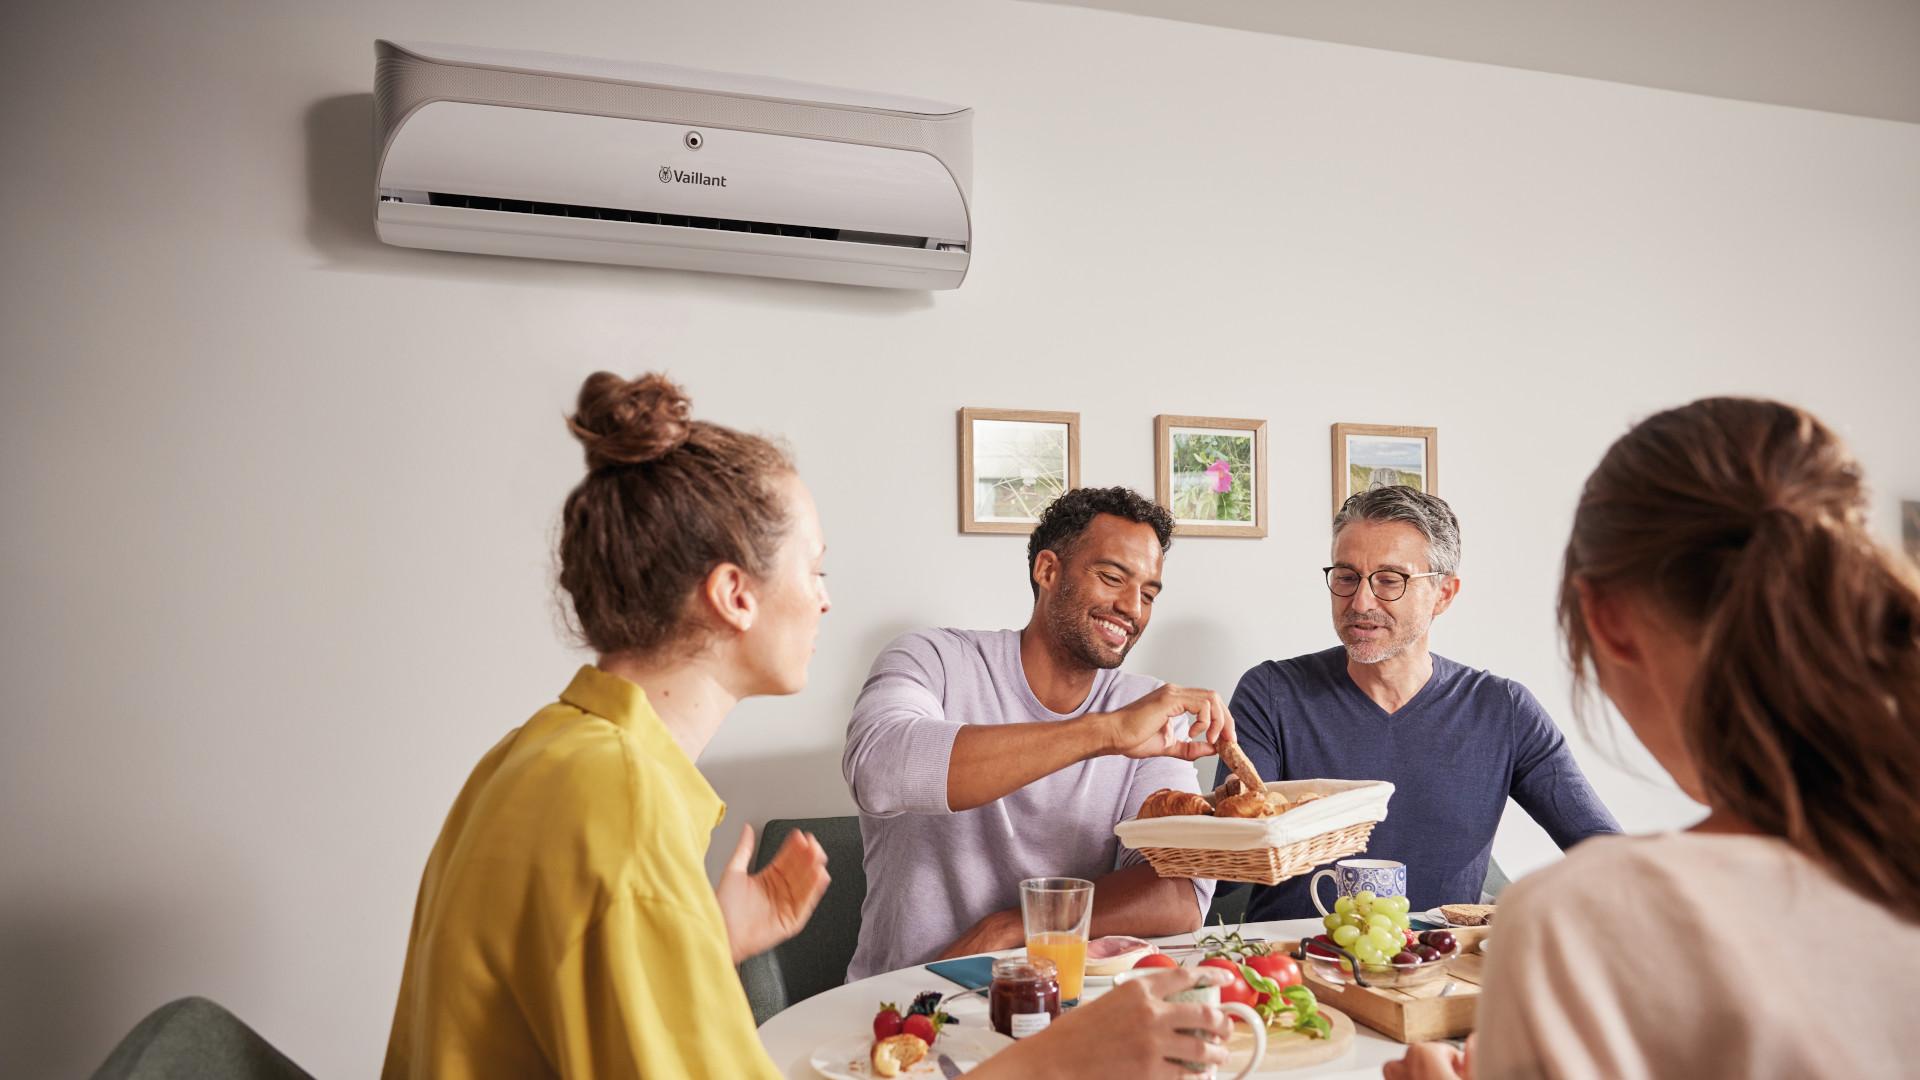 Lämpöpumppu on noussut syystäkin suosituksi kodin lämmitystukimuodoksi, ellei jopa kokonaan korvaamaan kodin lämmitysratkaisua